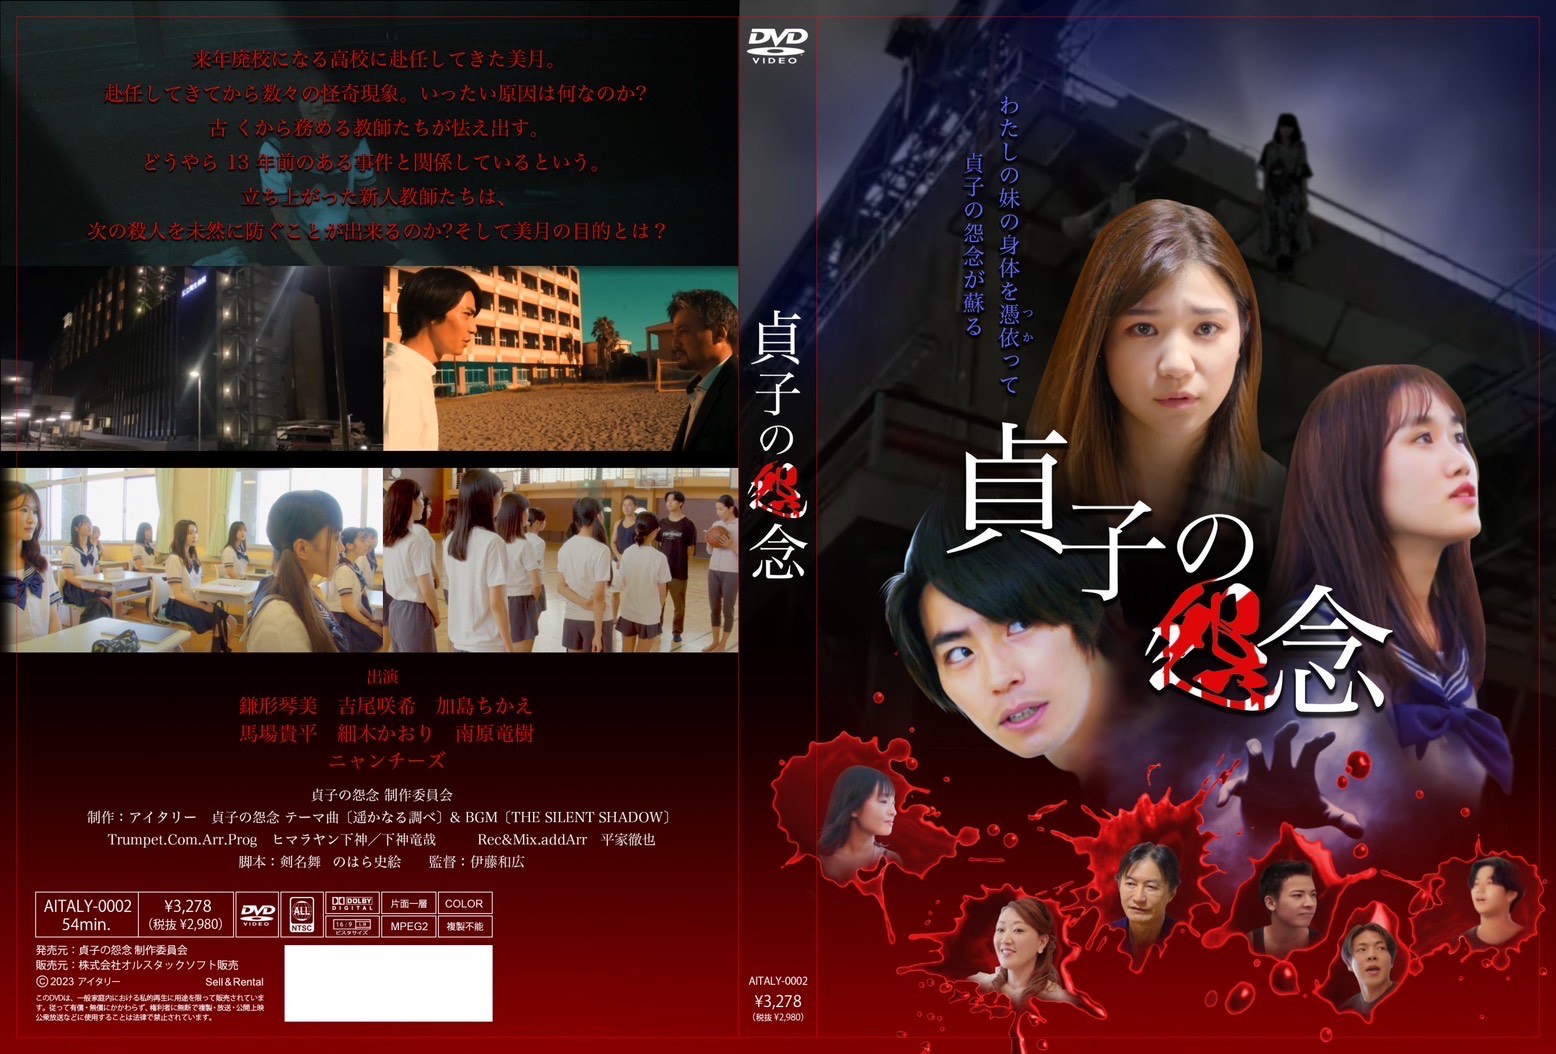 細木かおりが初めて映画に出演した「貞子の怨念」のDVD(cd)が2月27日に発売されます！